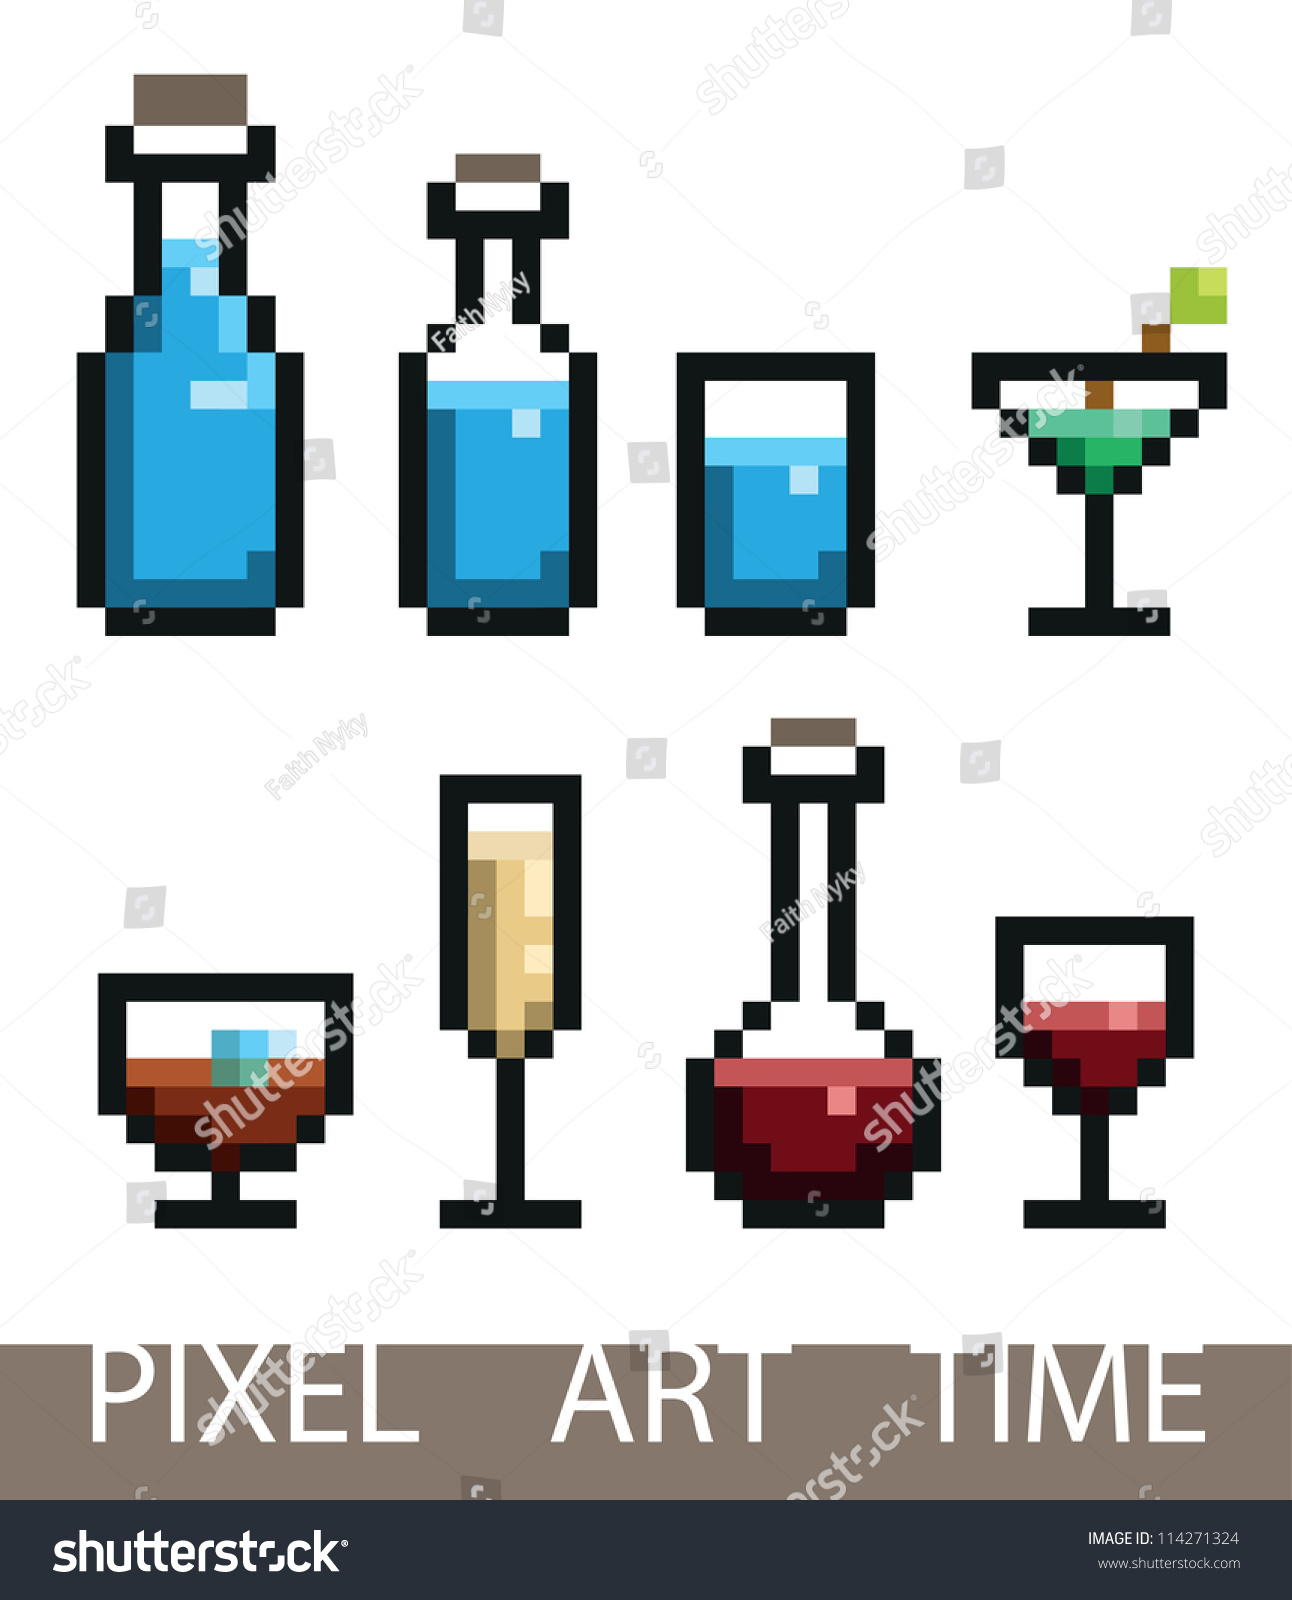 Пиксельное вино